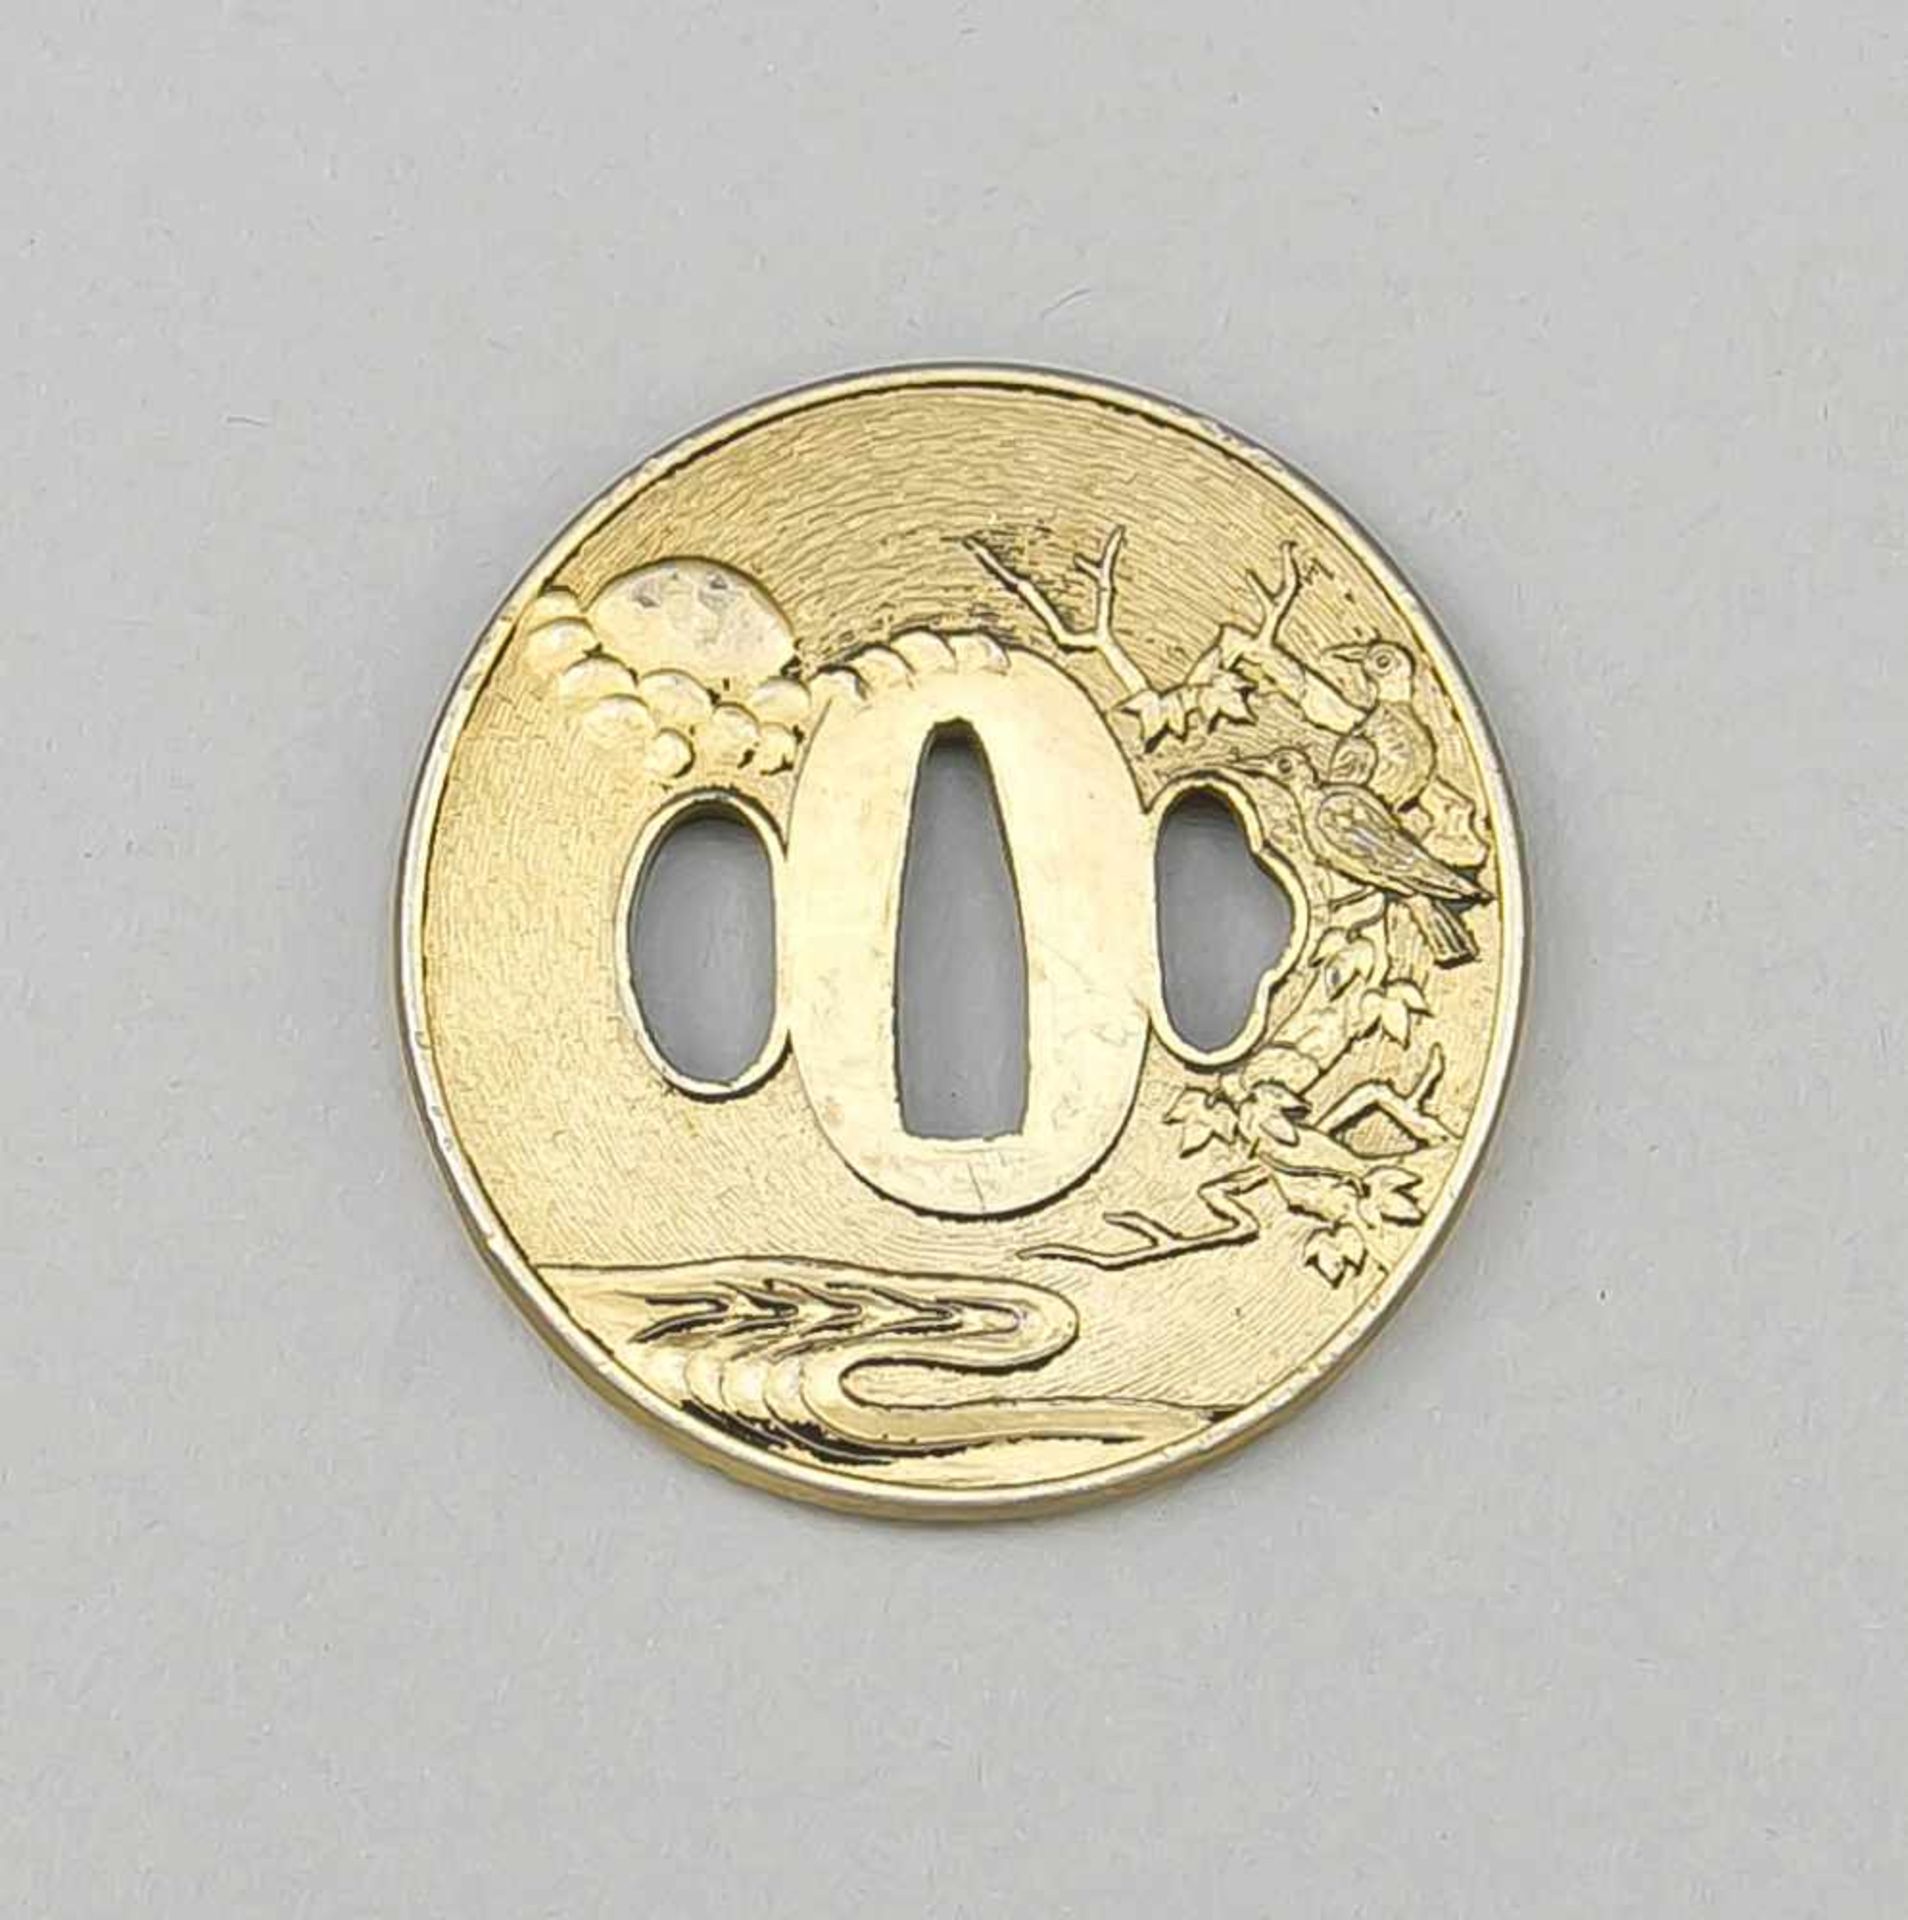 Tsuba, Katana-Stichblatt, Japan, 18./19. Jh., Bronze? vergoldet. Runde Form mitbeidseitiger